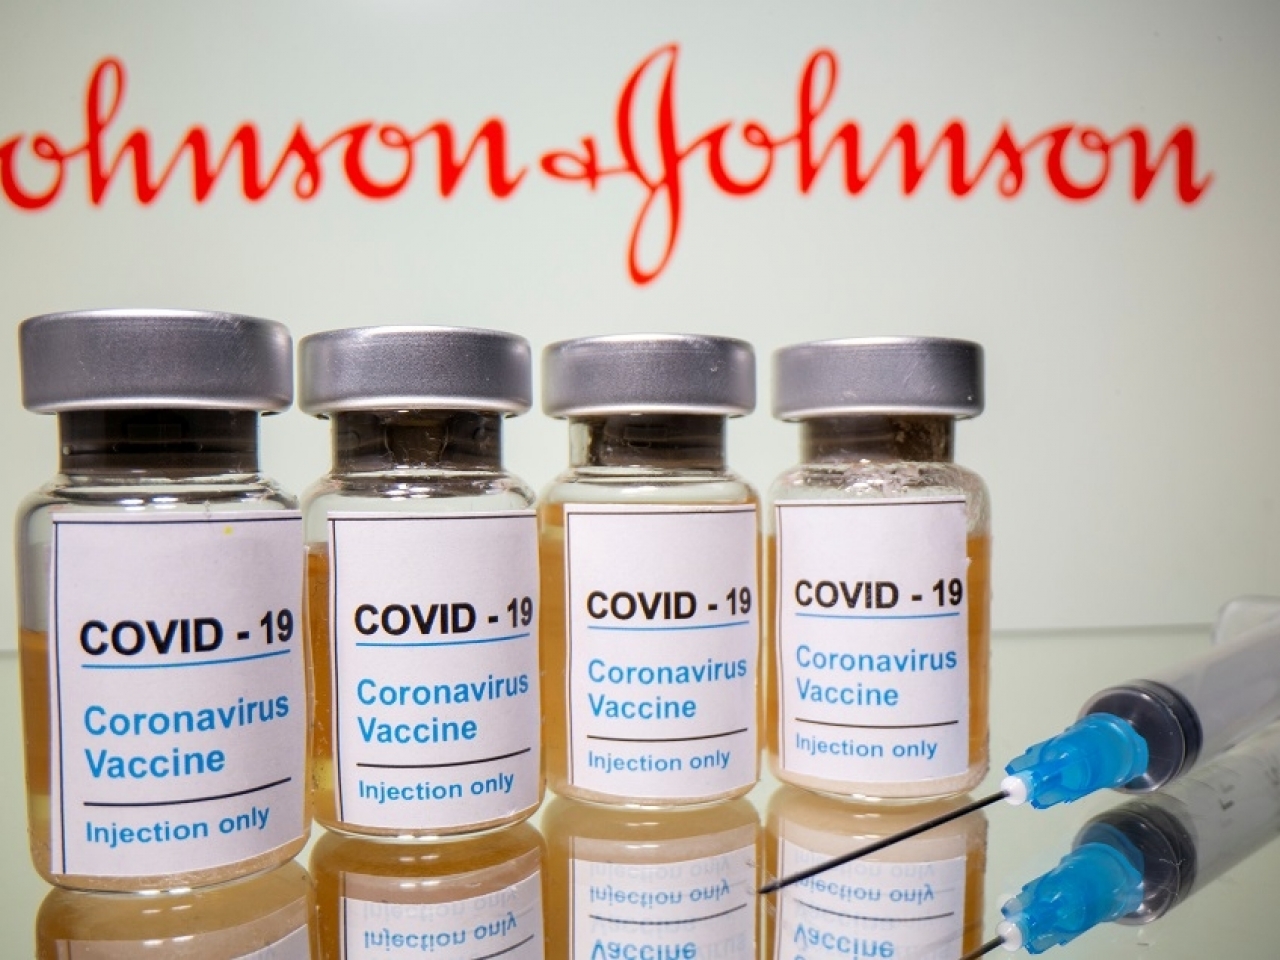 強生疫苗多人接種後出現血栓 美疾控建議暫停使用